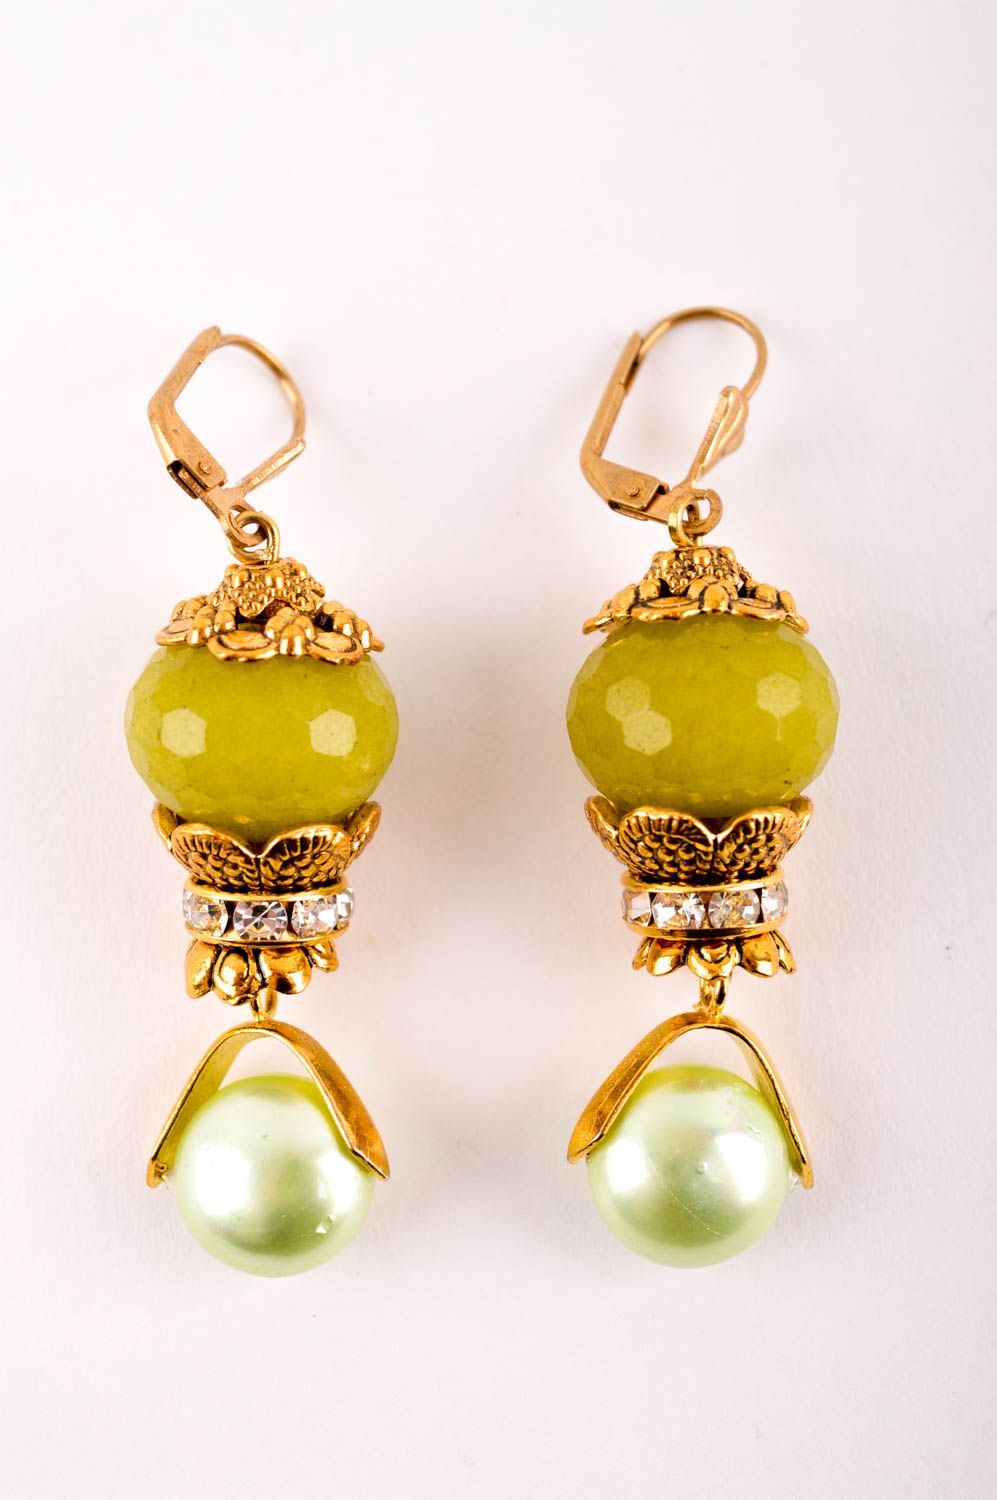 Handmade earrings designer earrings with charms stone earrings for women photo 3